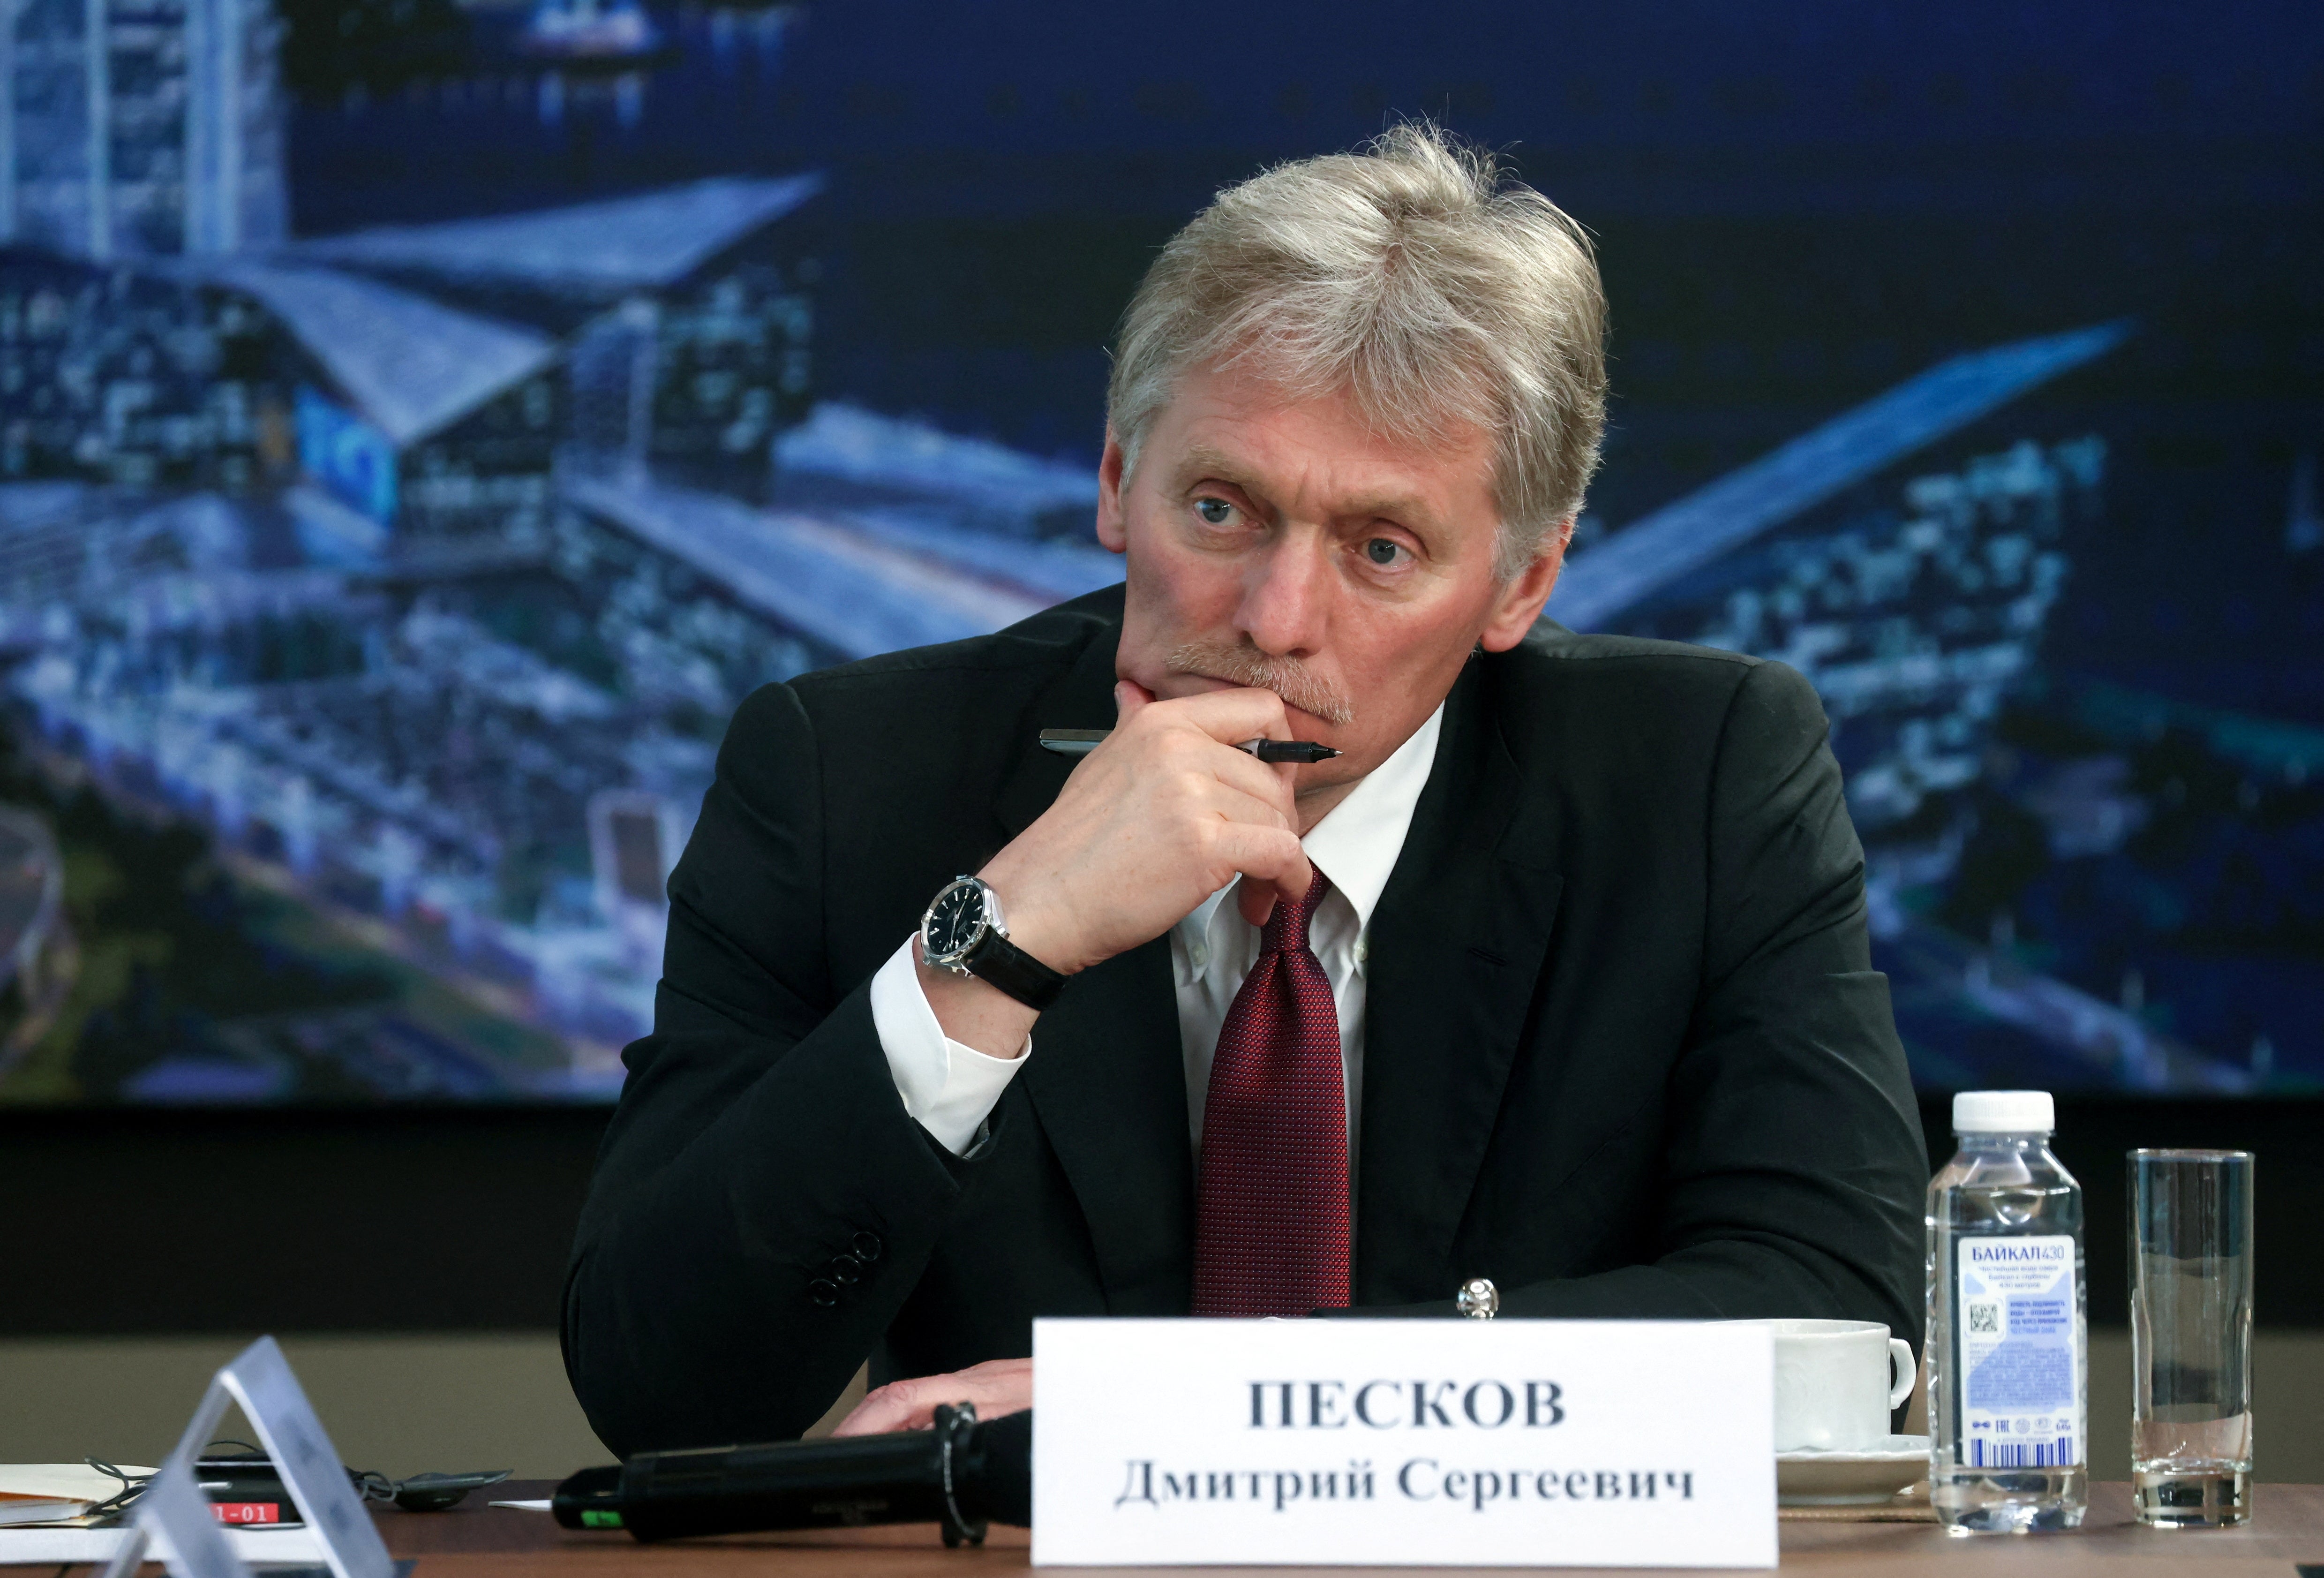 O porta-voz do Kremlin, Dmitry Peskov, fala aos repórteres no início deste ano